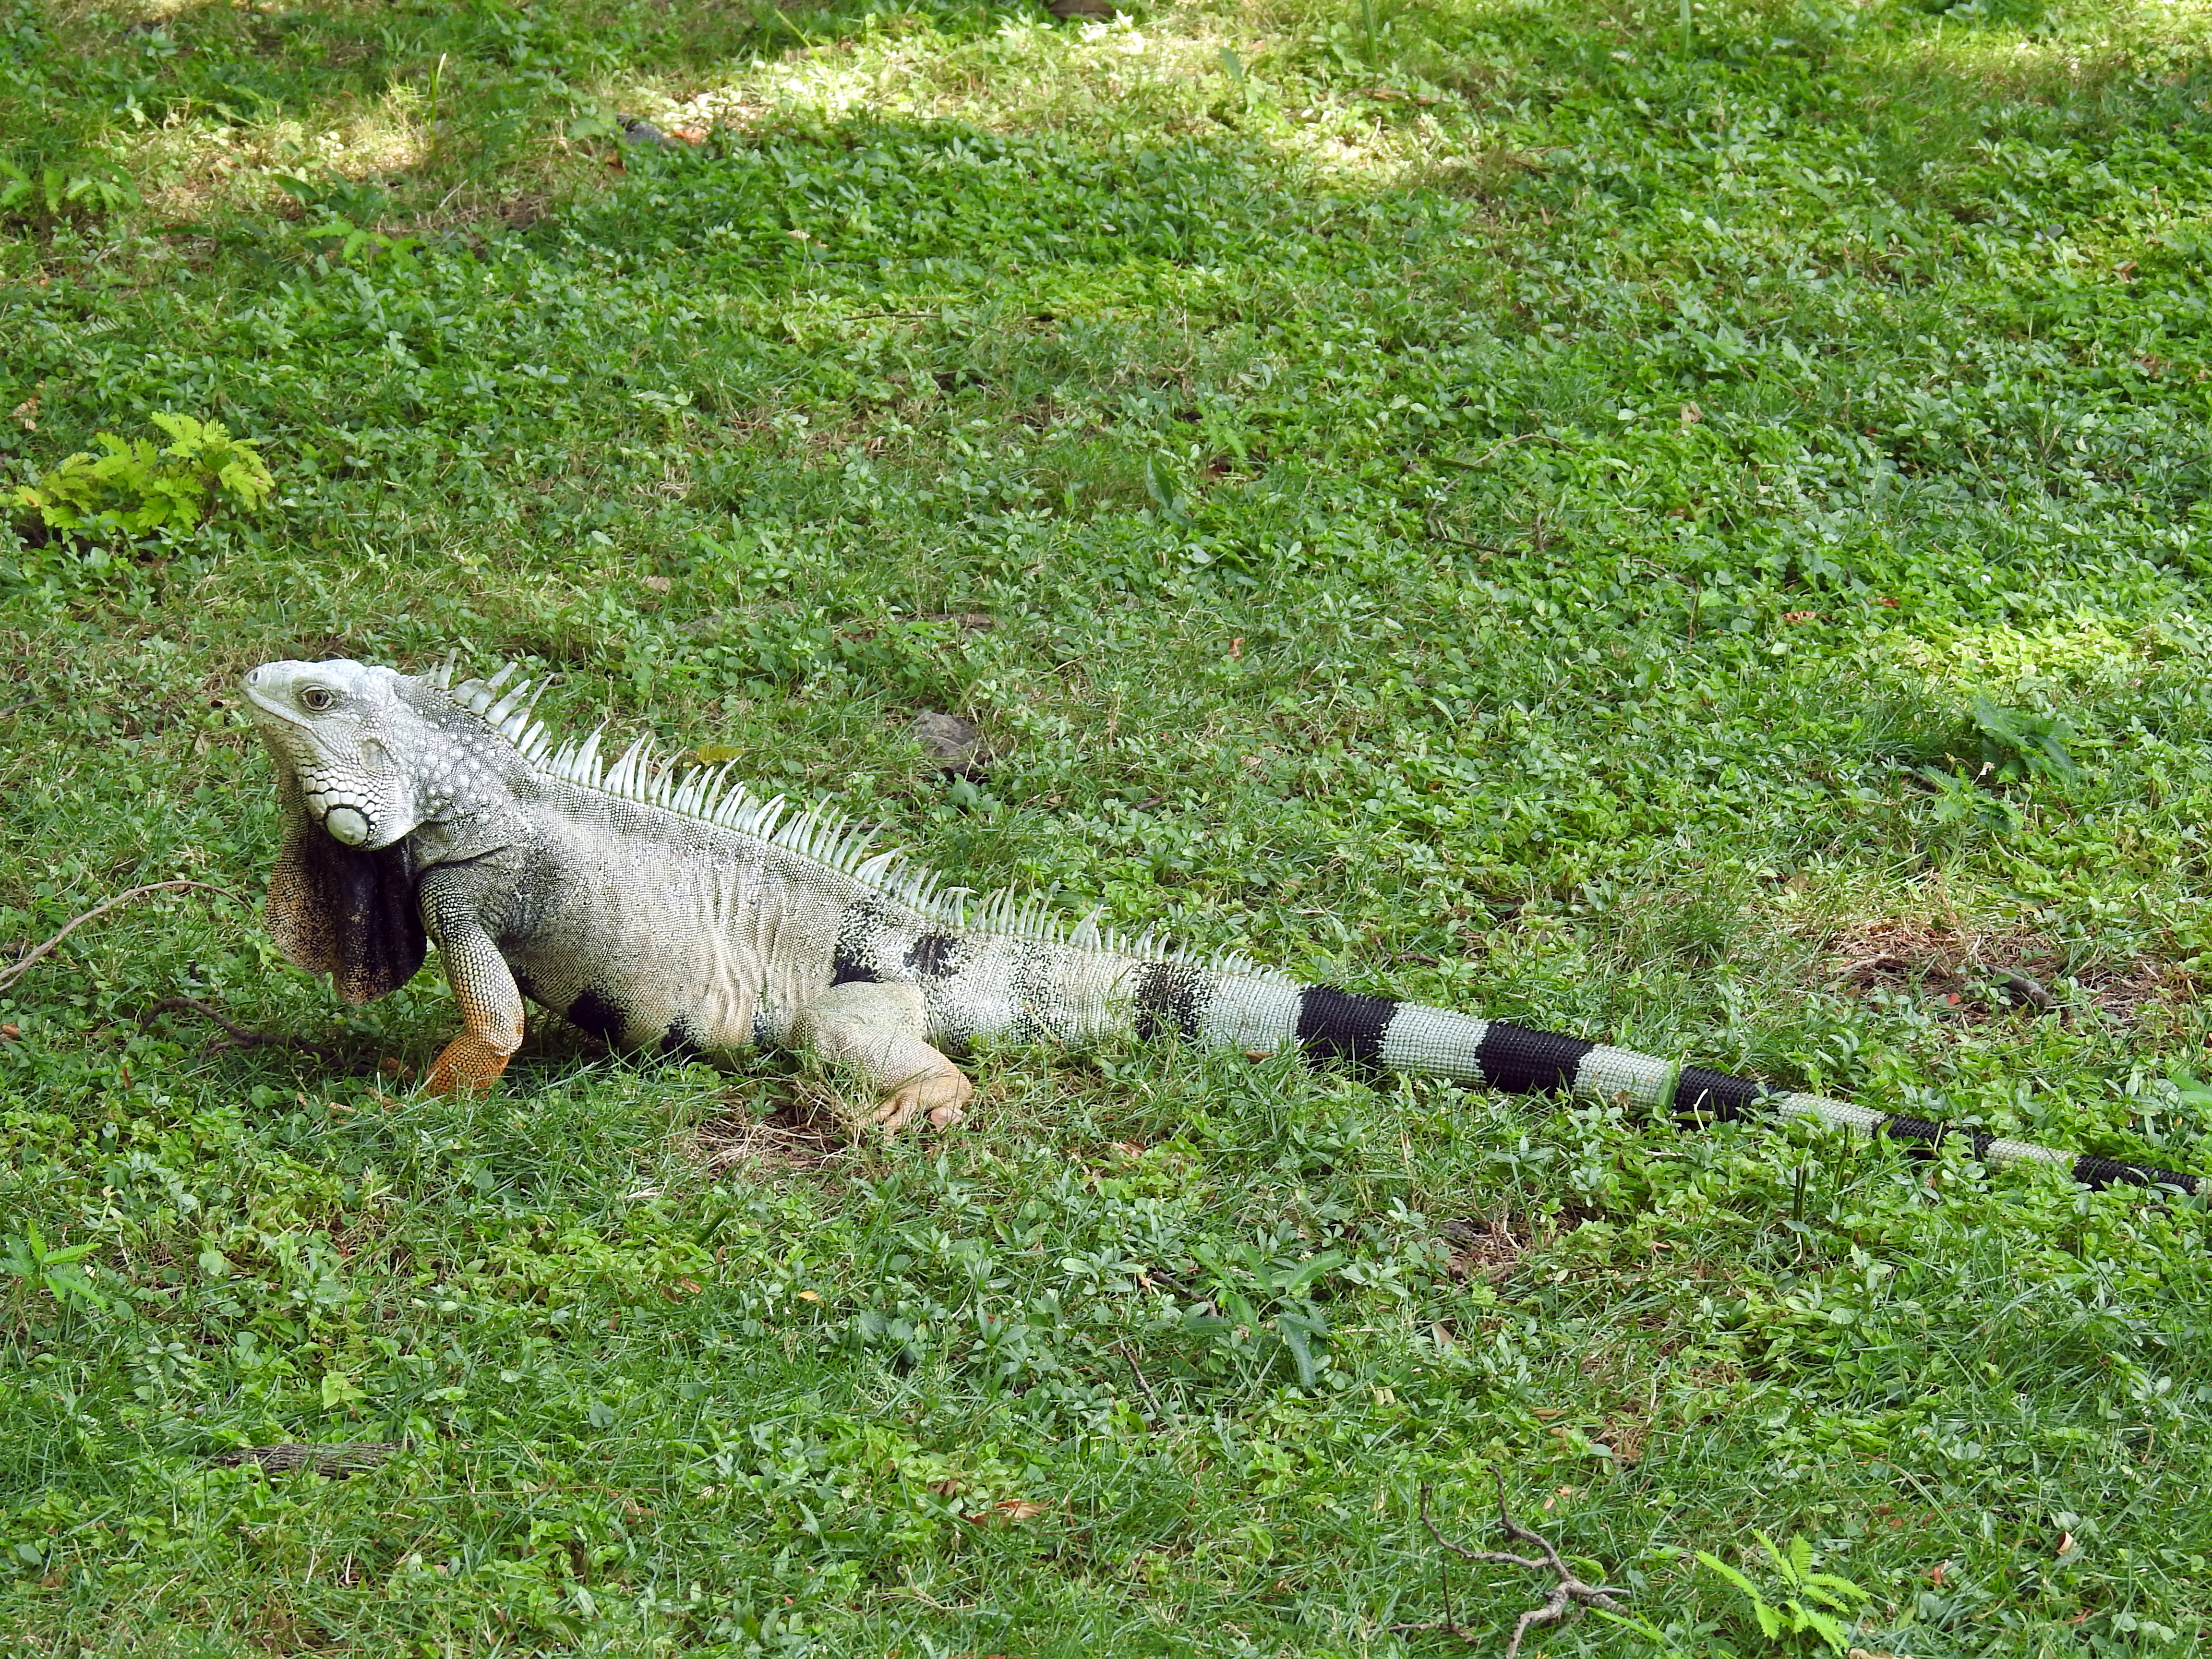 An iguana in Santa Marta